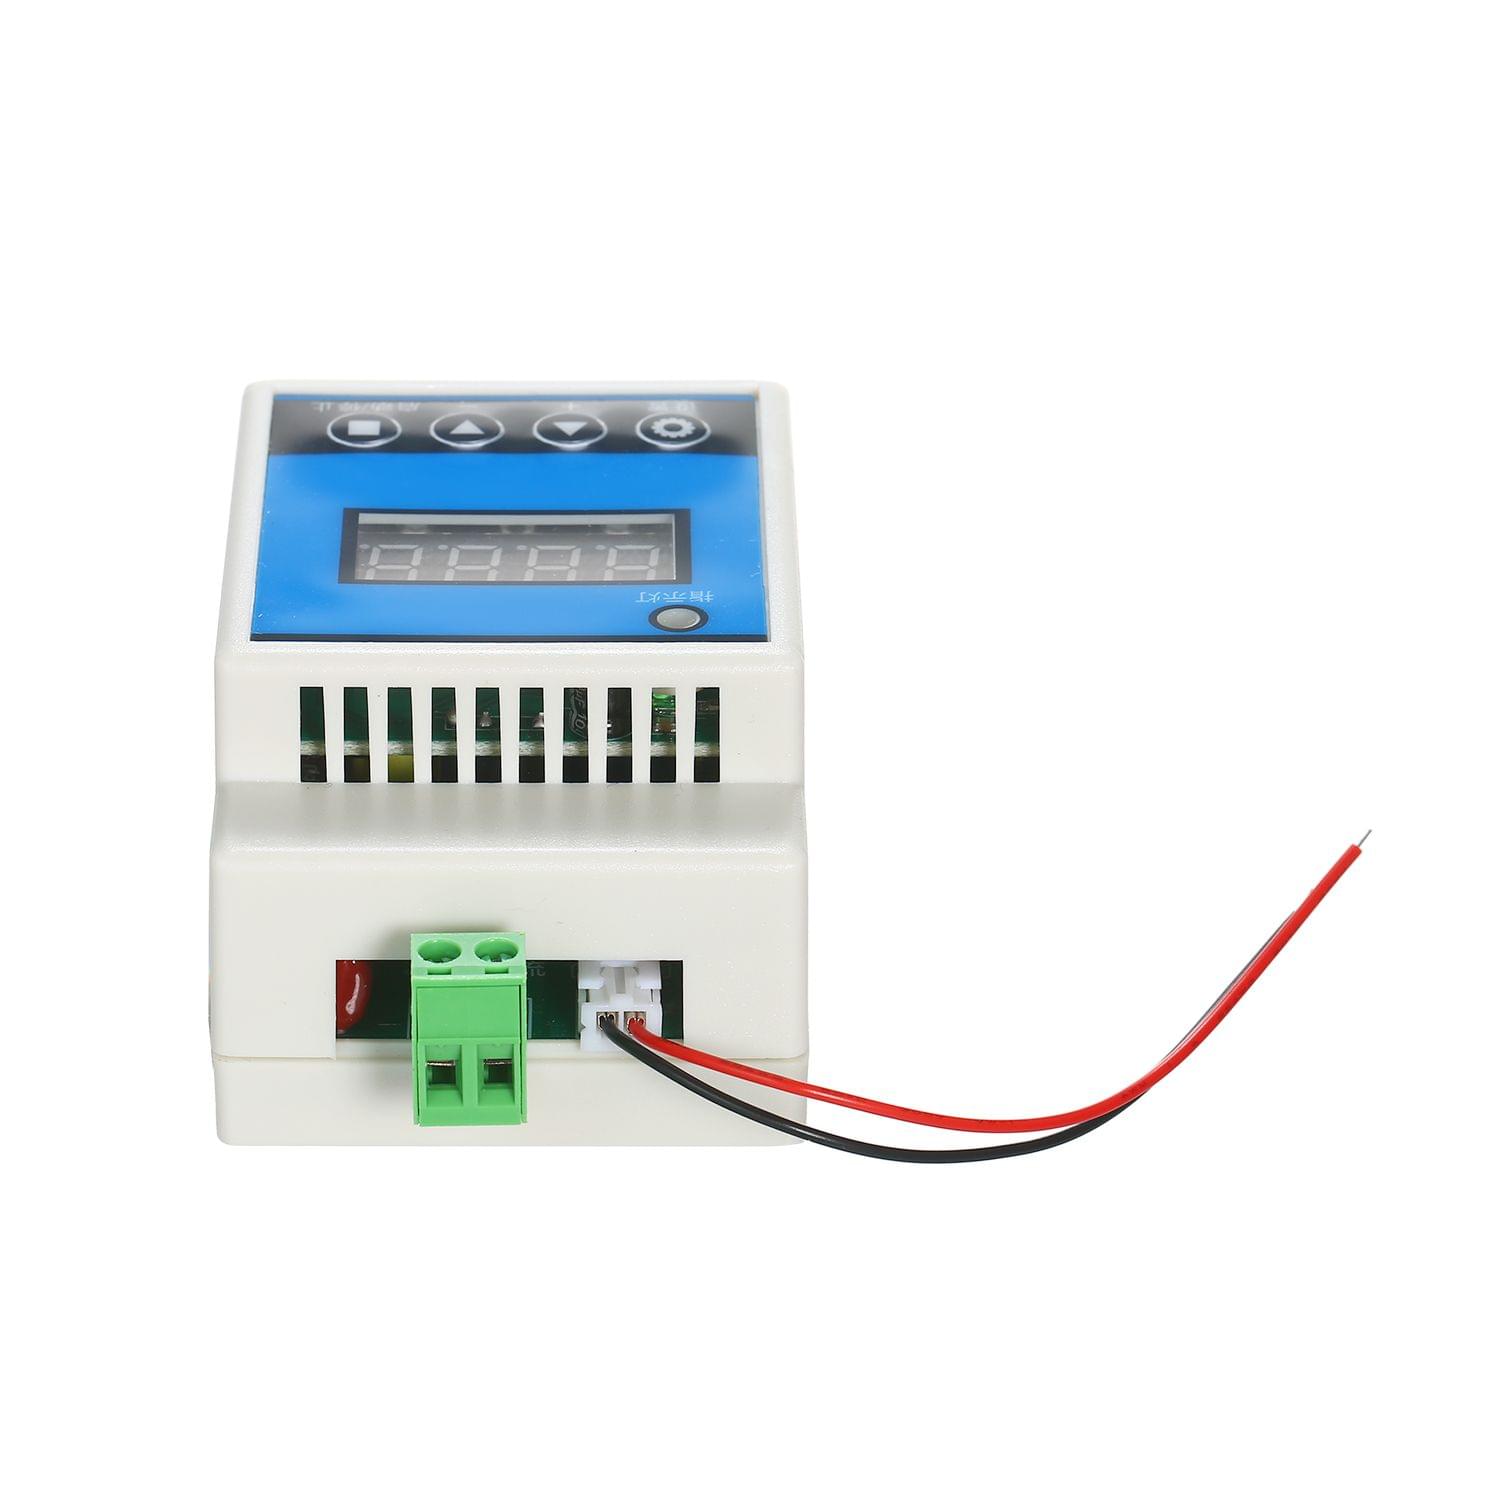 AC 220V Digital Delay Timer Control Switch Relay Module with - AC 220V